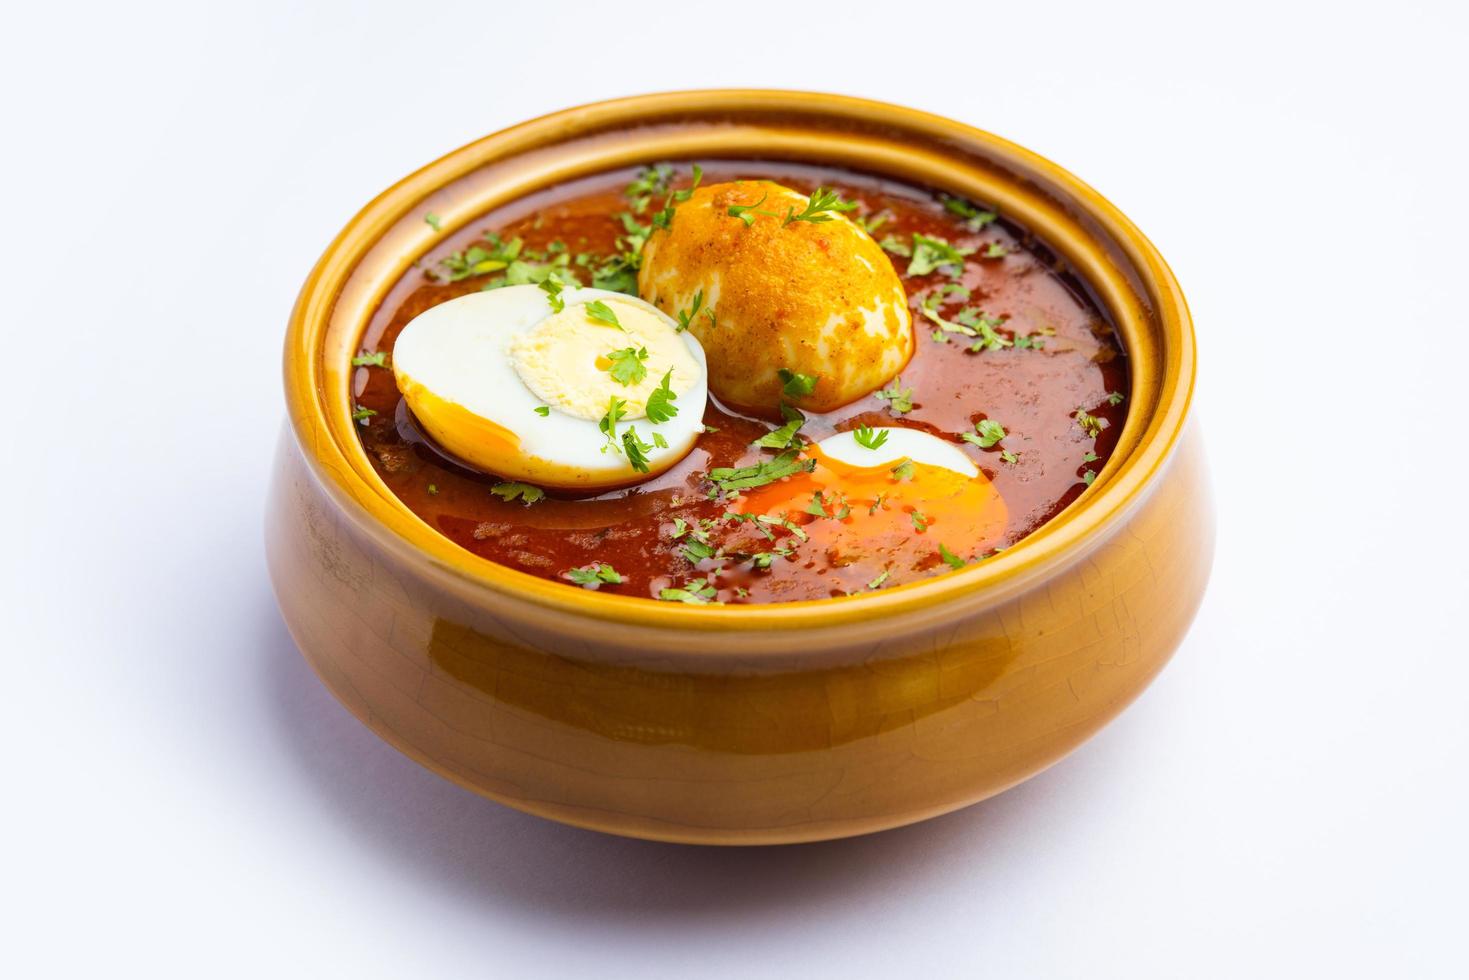 anda masala o uovo curry è popolare indiano speziato cibo foto